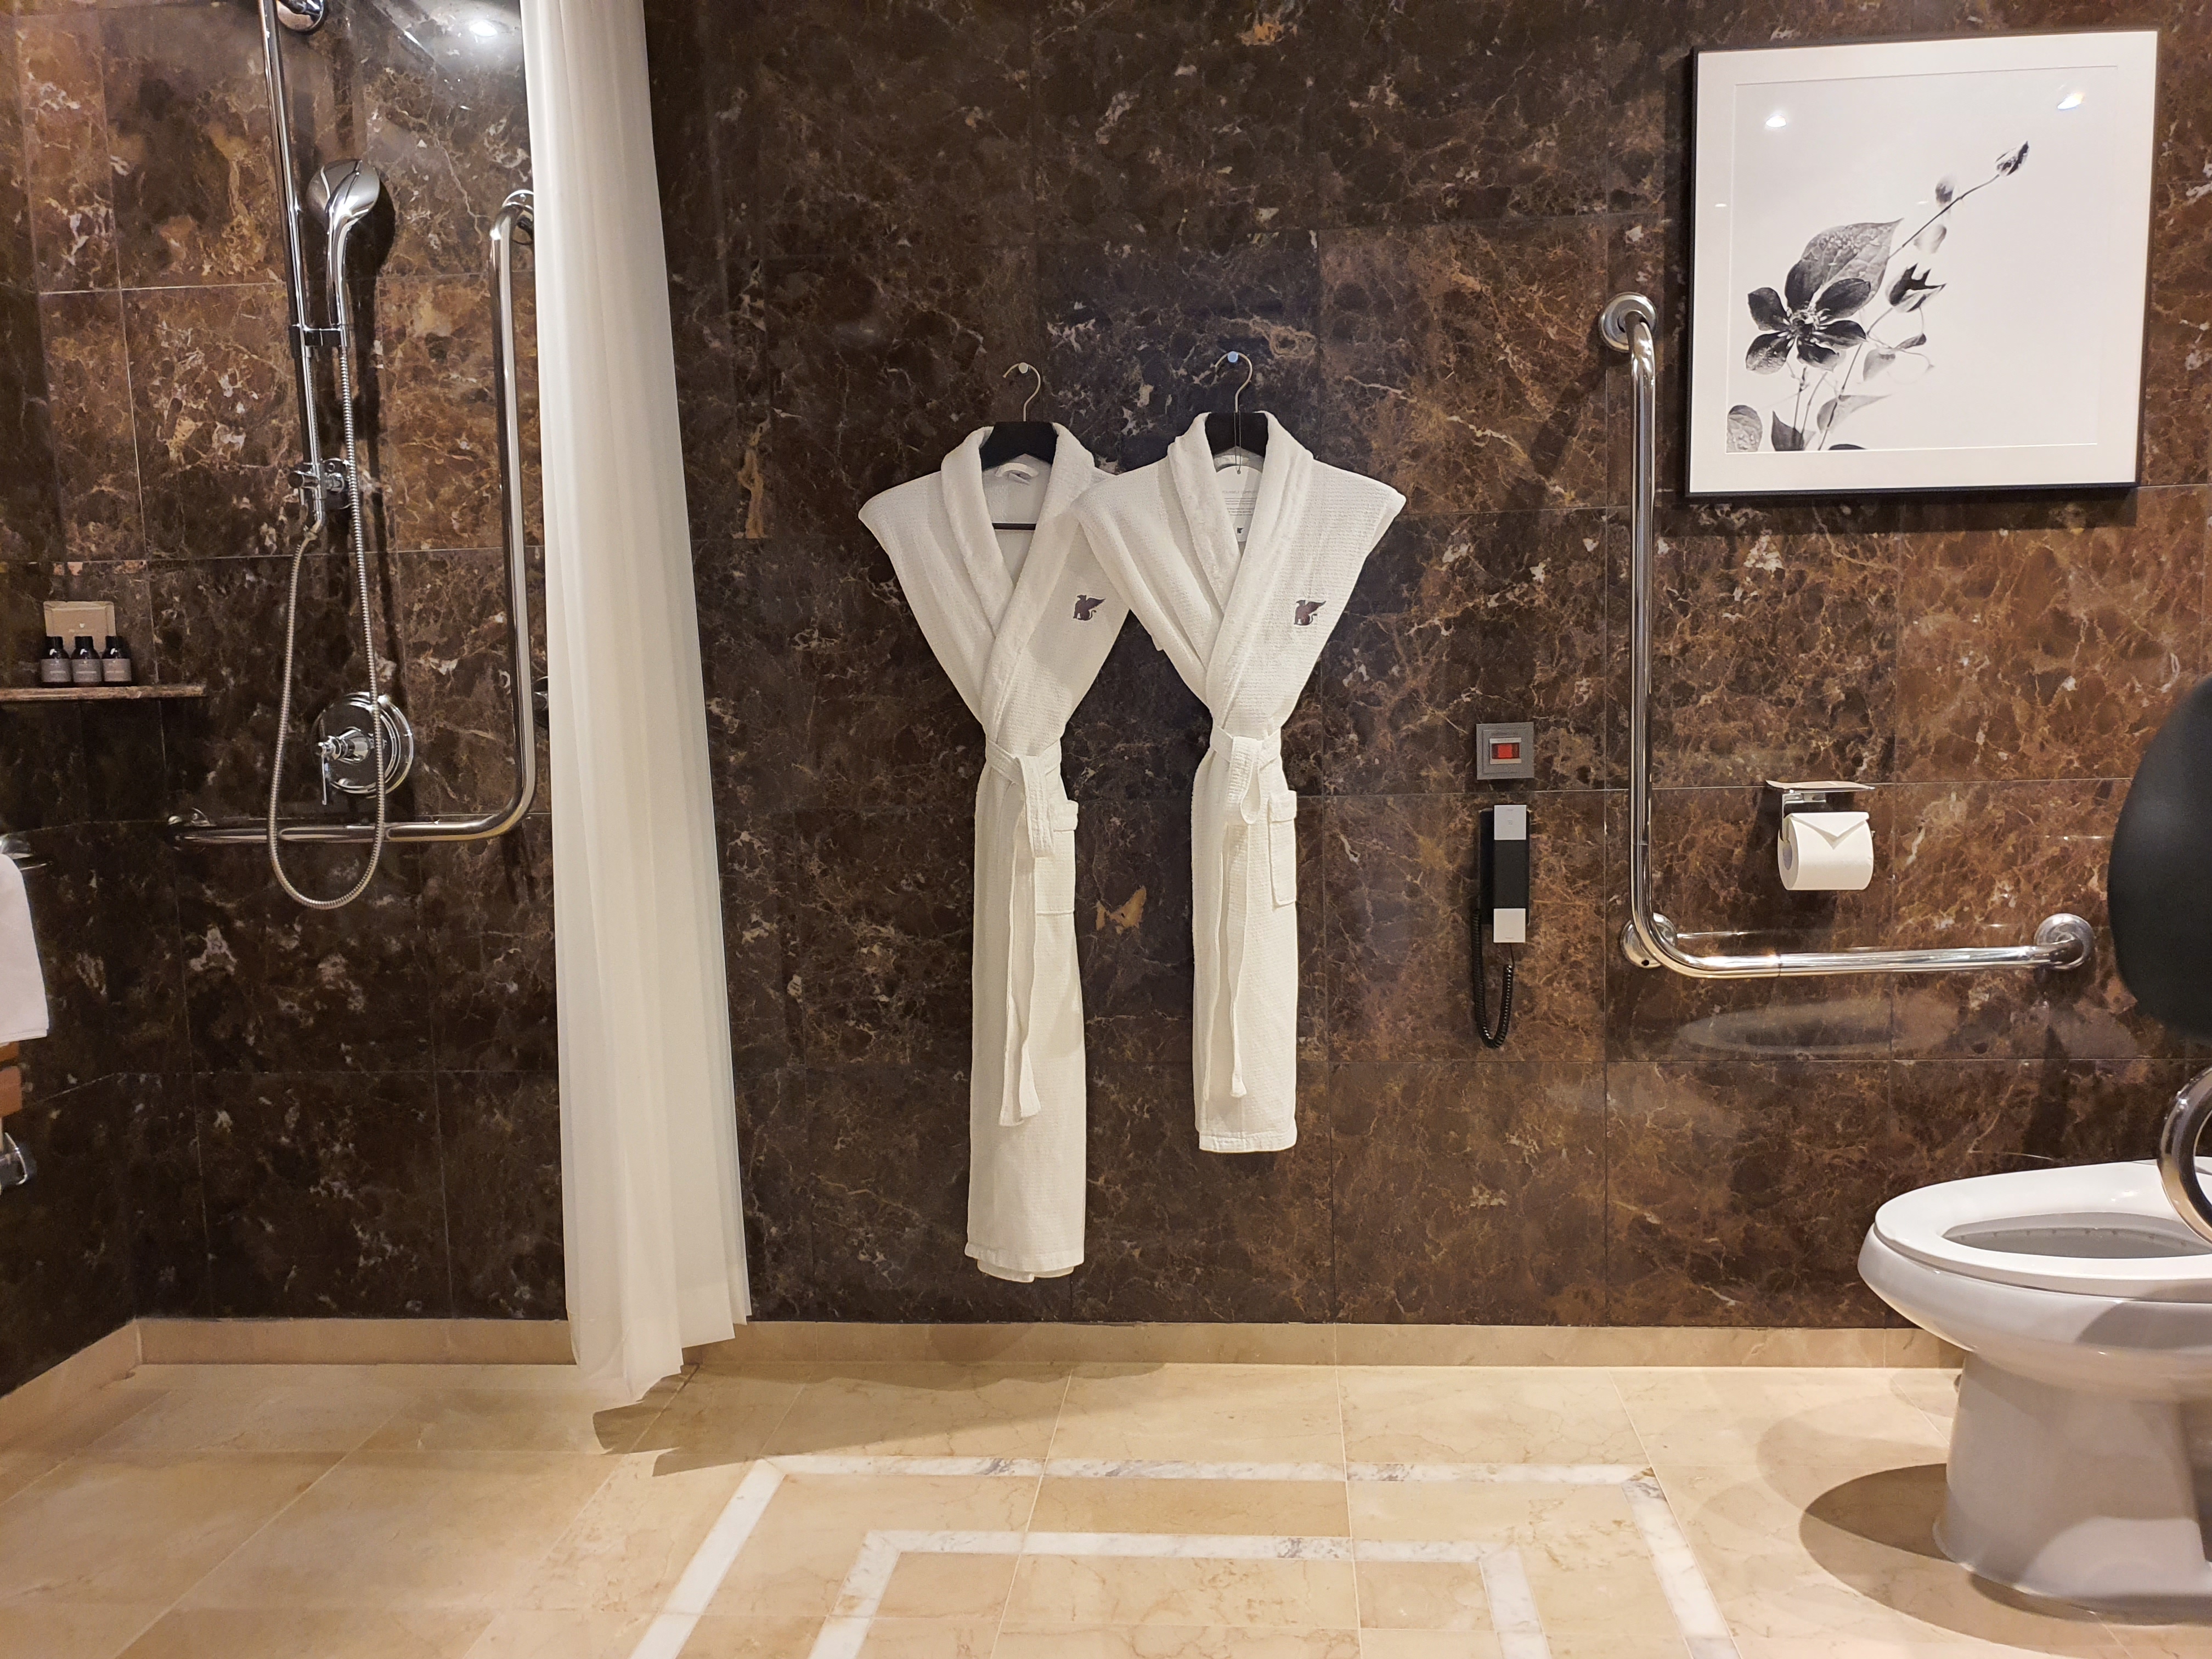 객실 화장실0 : 샤워 공간이 갖춰진 장애인 객실 내 화장실